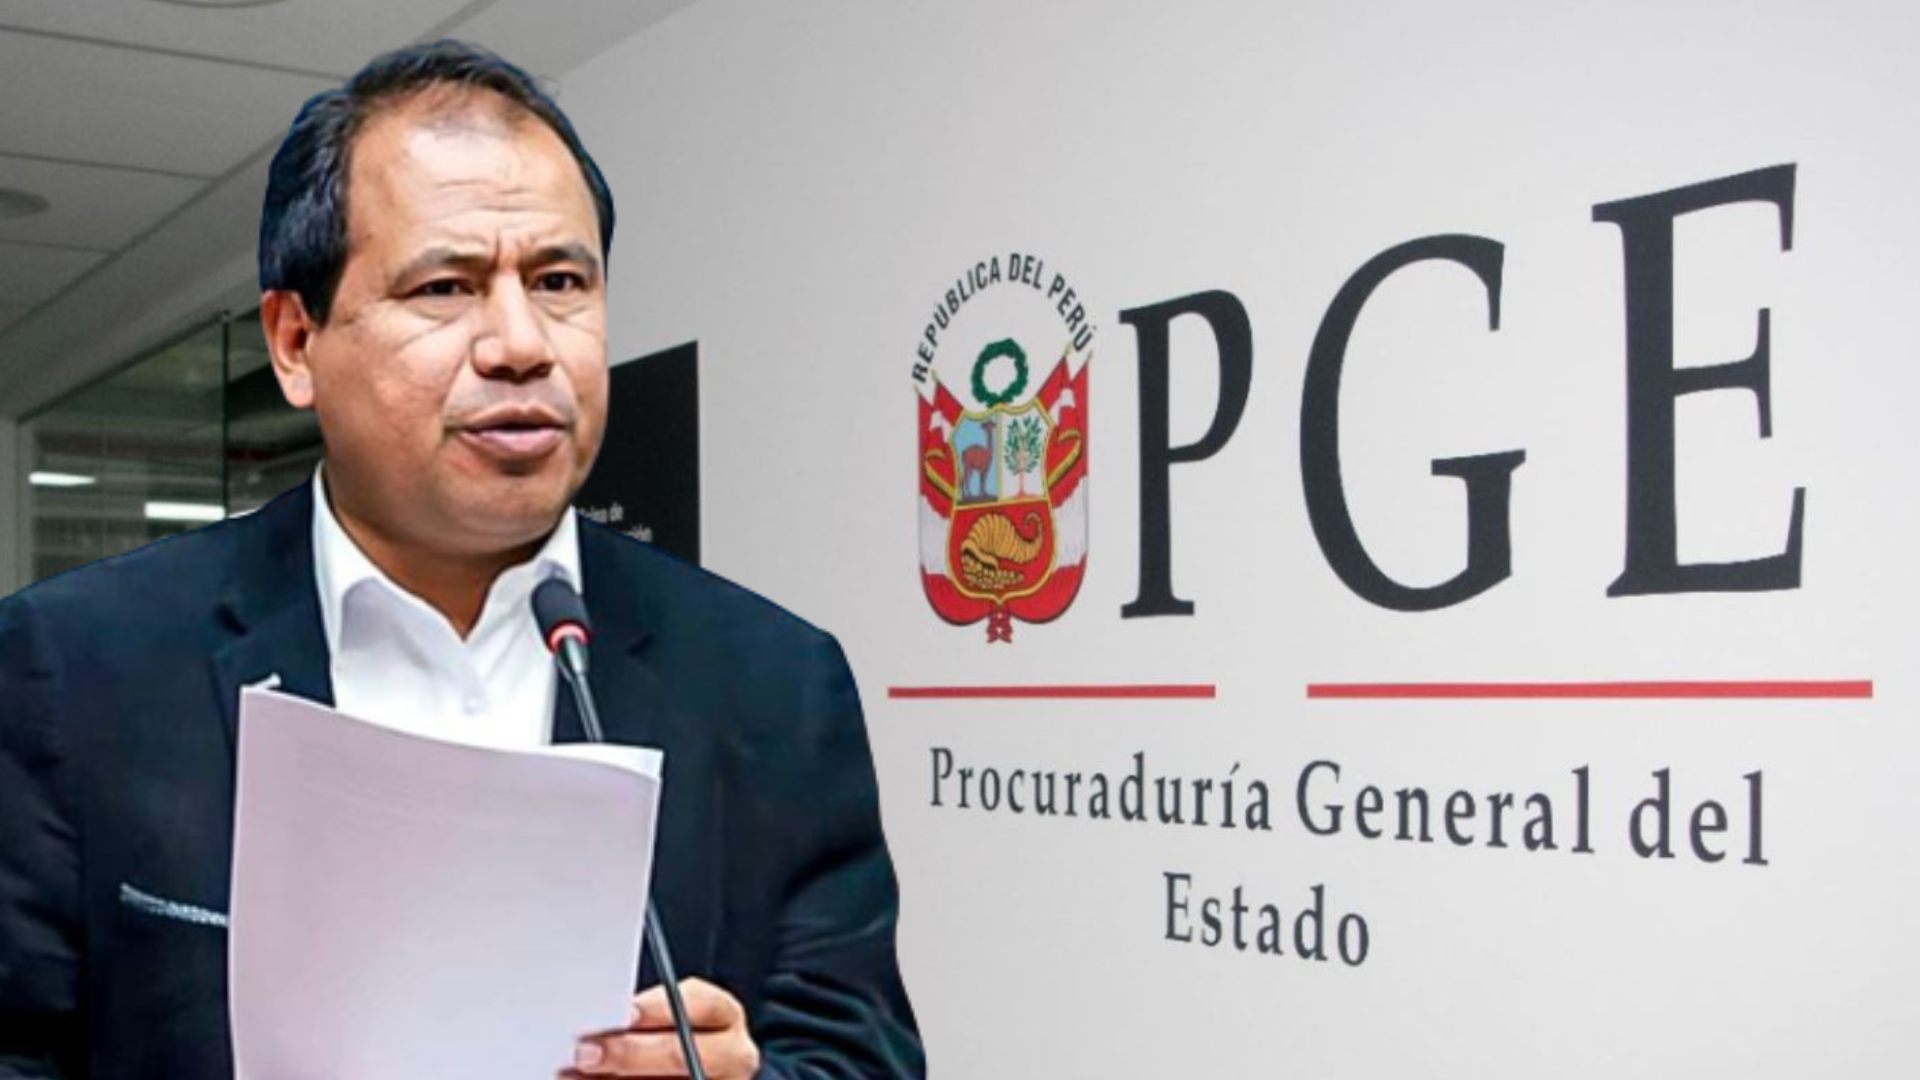 Procuraduría denunció al congresista Edgar Tello por concusión ante presunto recorte de sueldo